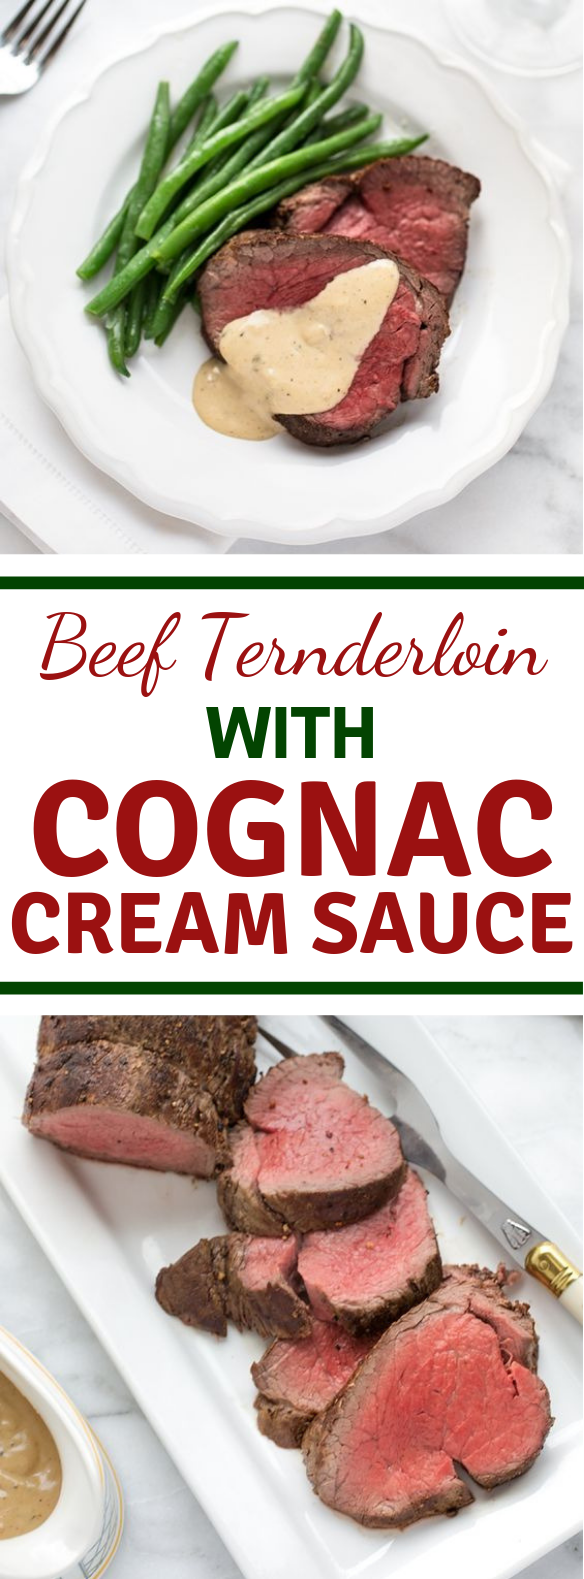 BEEF TENDERLOIN WITH COGNAC CREAM SAUCE #Beef #Steaks